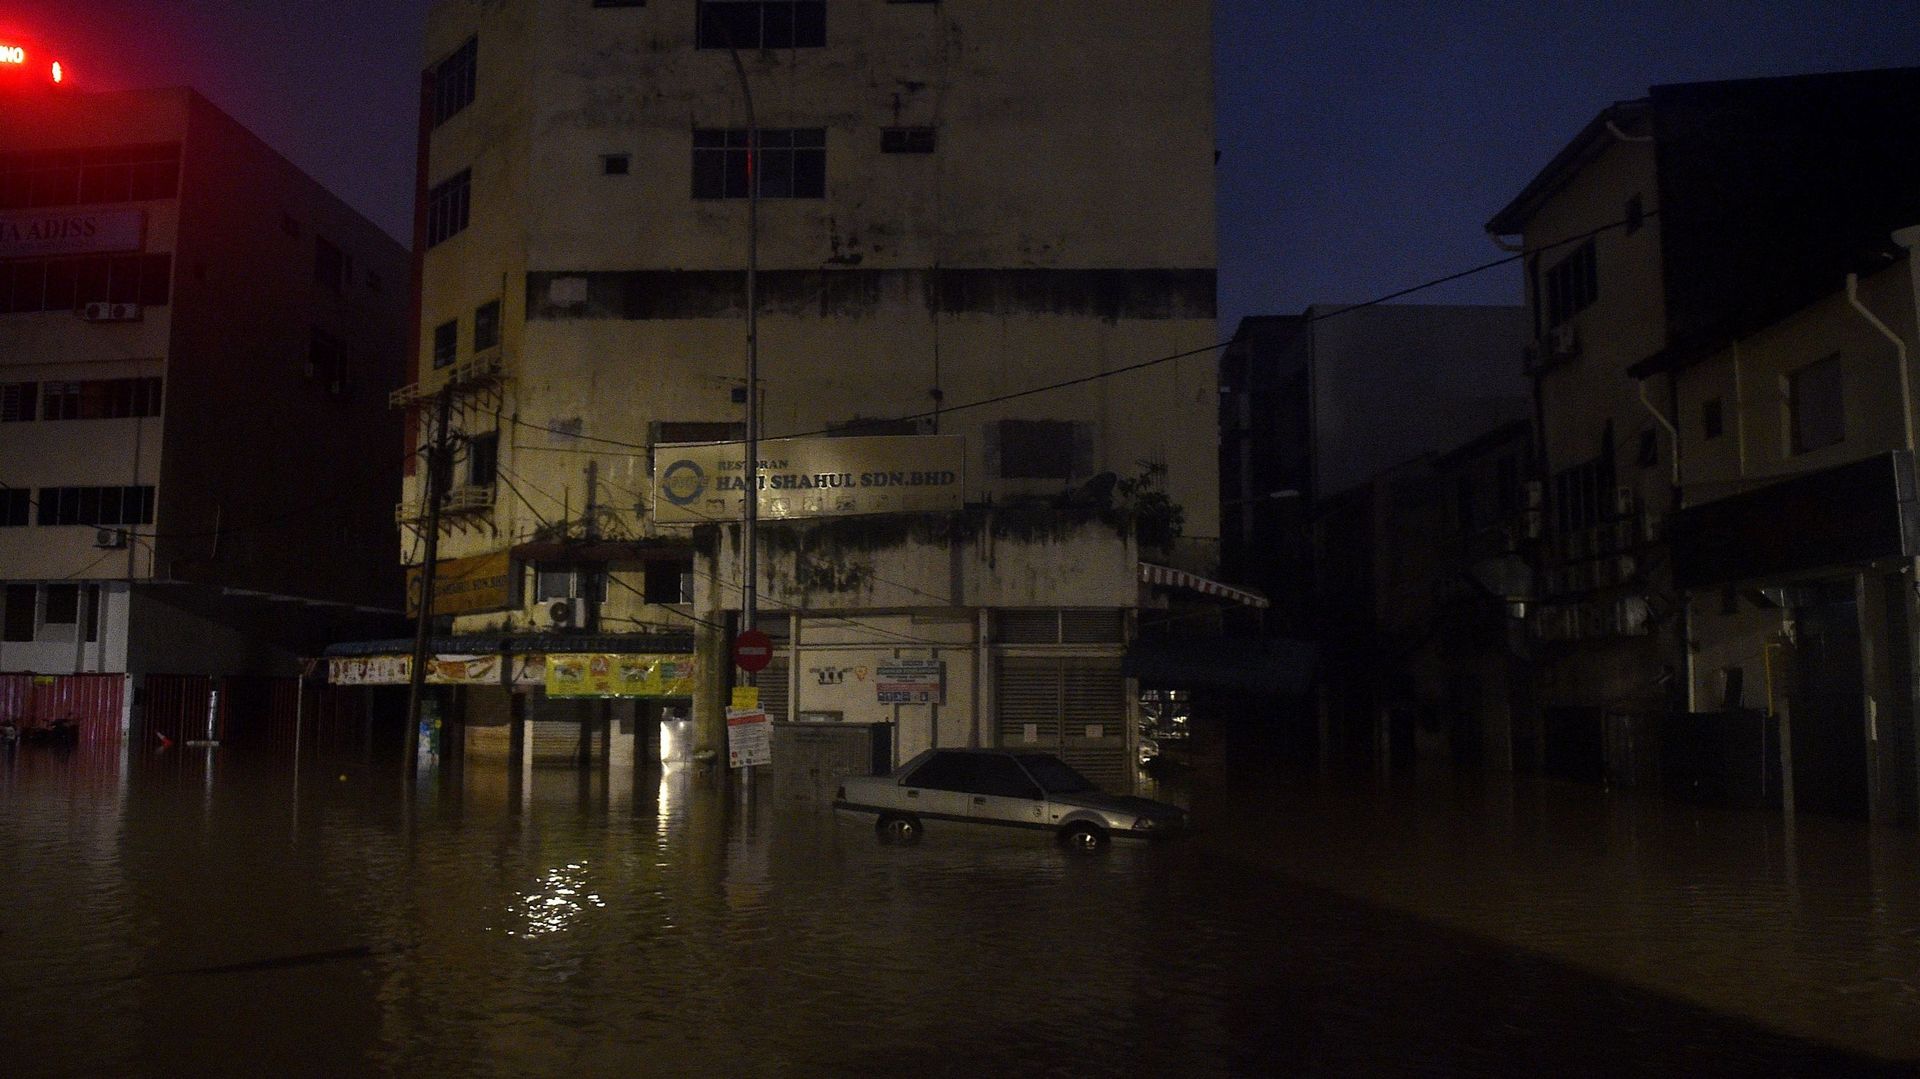 Une voiture est vue dans l'eau d'une inondation causée par de fortes pluies à Kuala Lumpur, tôt le 19 décembre 2021.